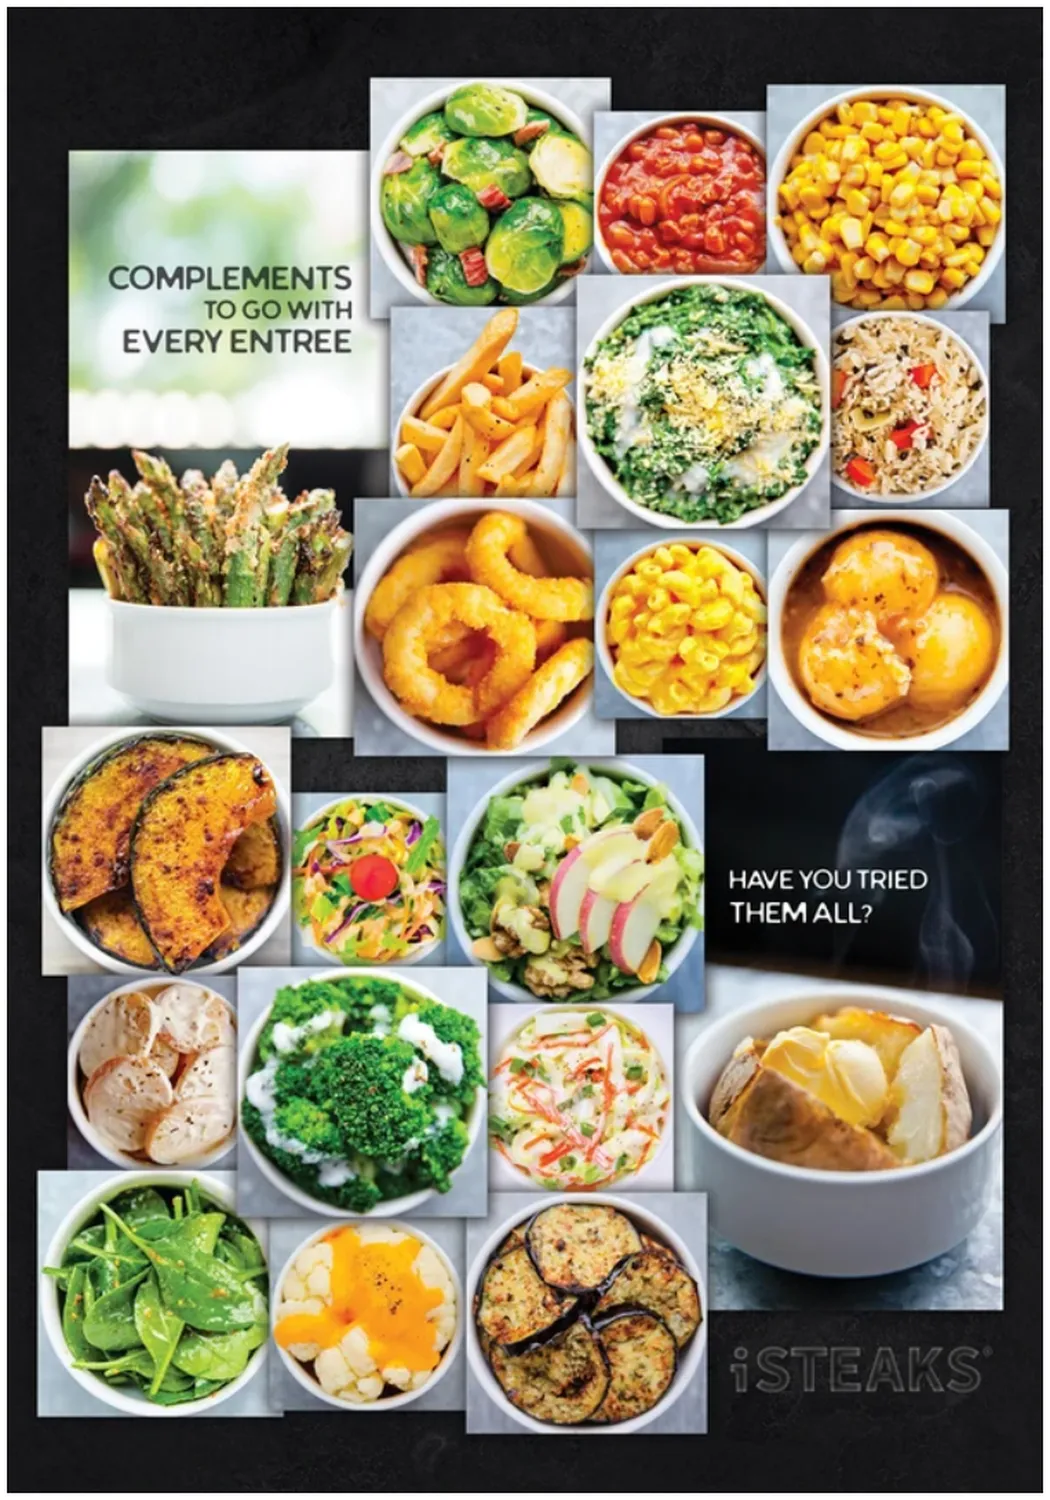 iSTEAK menu singapore complements